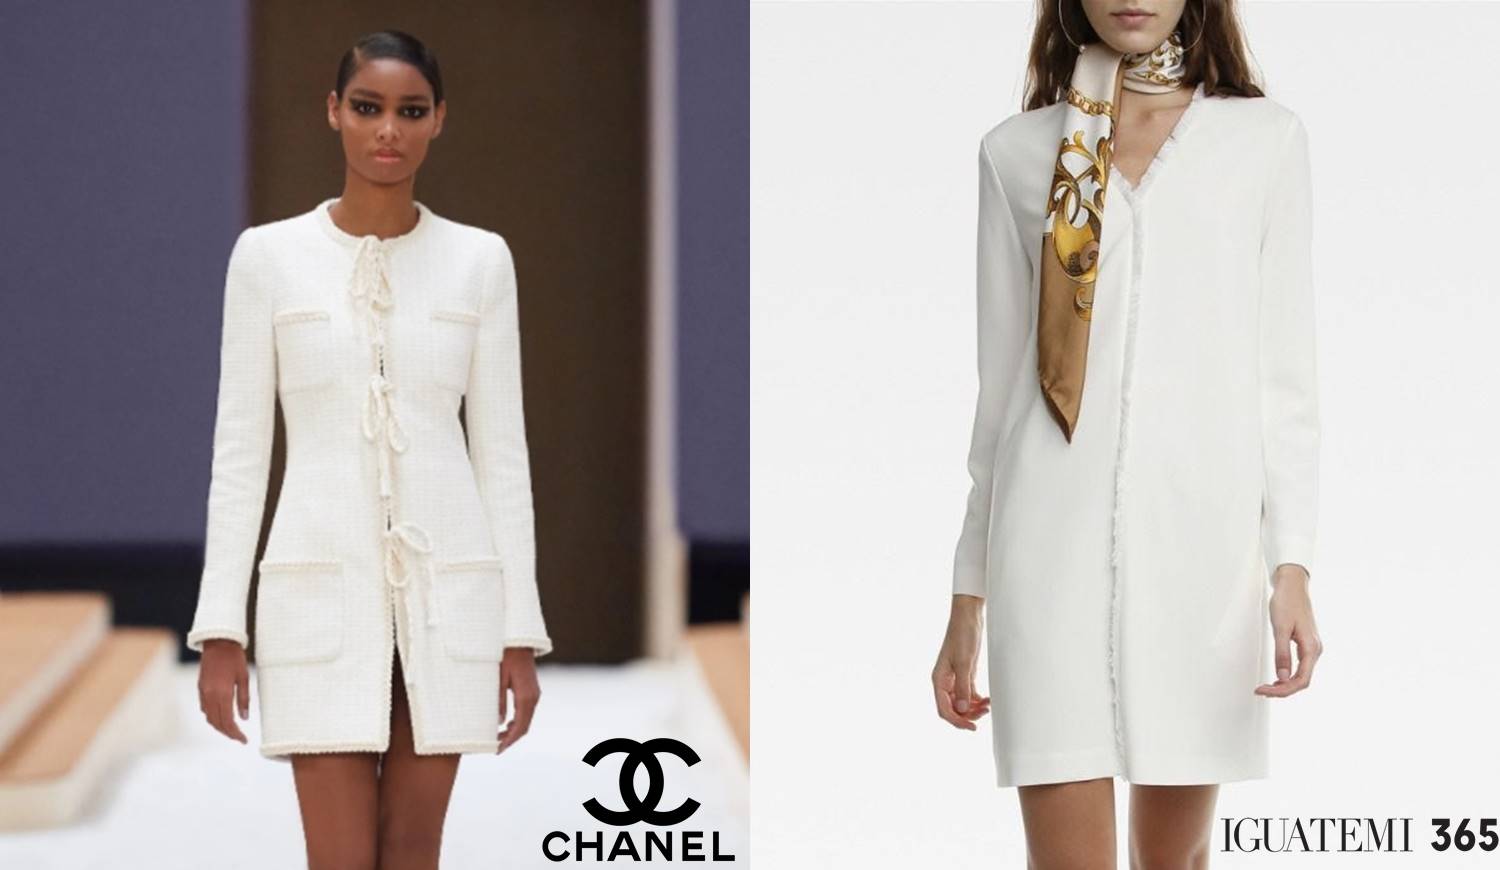 Foto de modelo no desfile Alta Costura Chanel 2022 e de peça de roupa do Iguatemi 365.